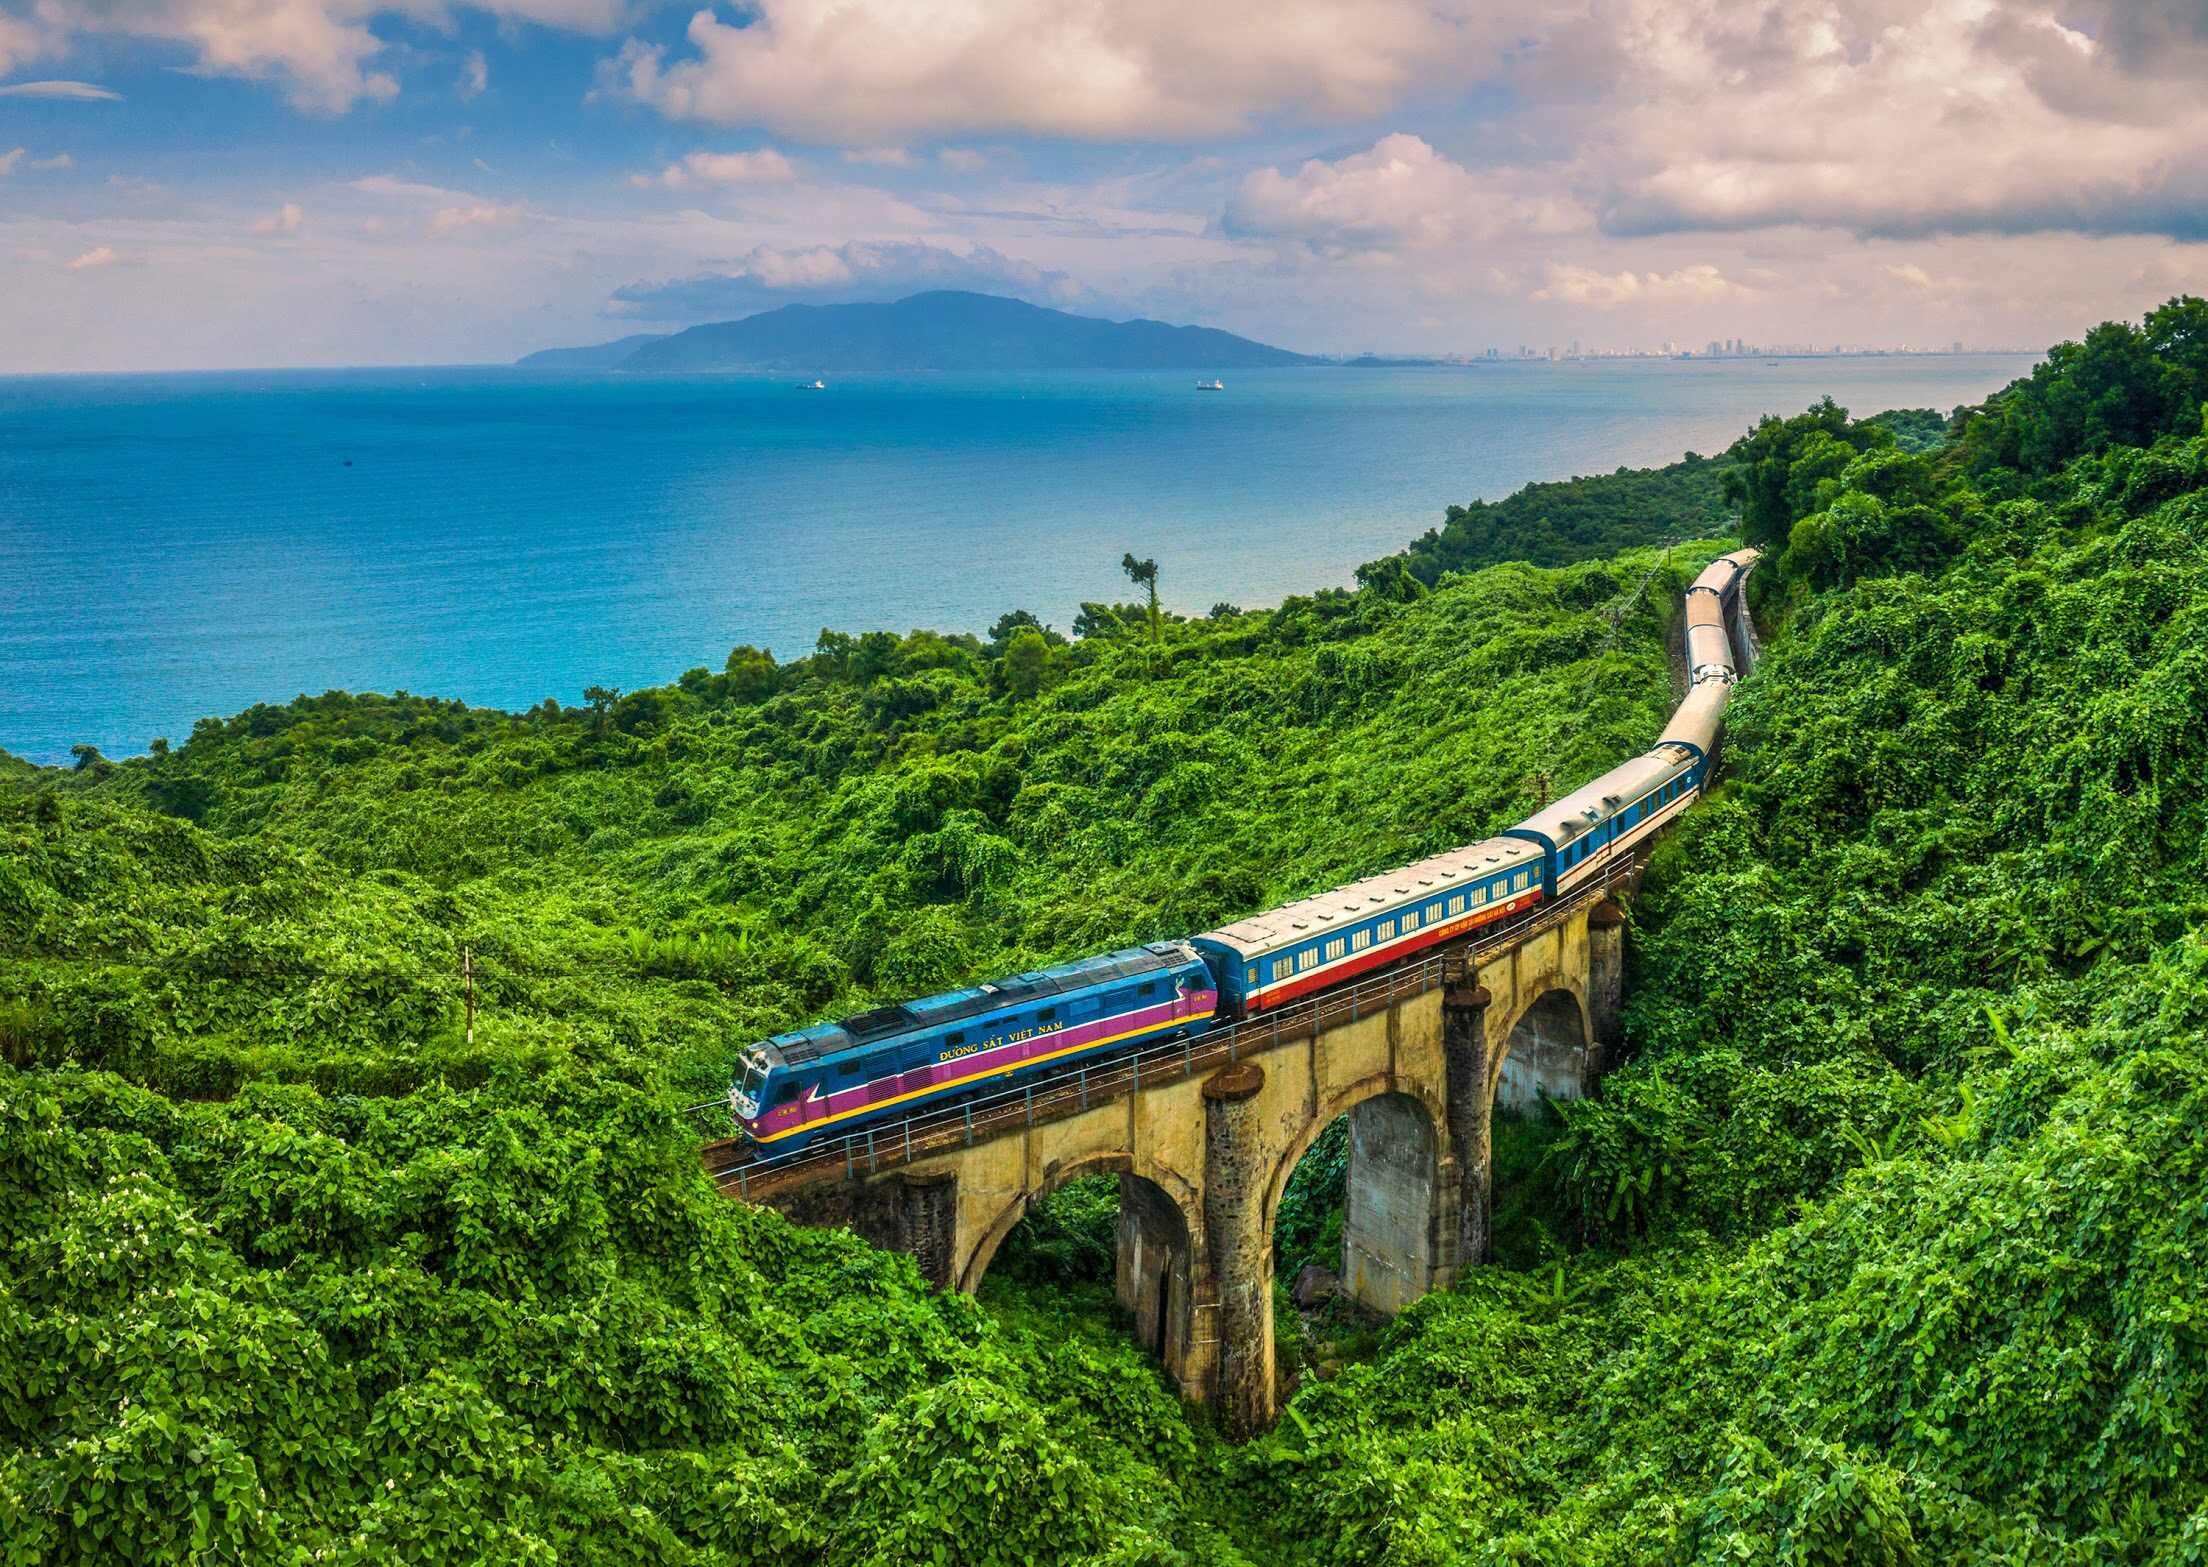 Đường sắt Việt Nam báo lãi sau 3 năm kinh doanh thua lỗ